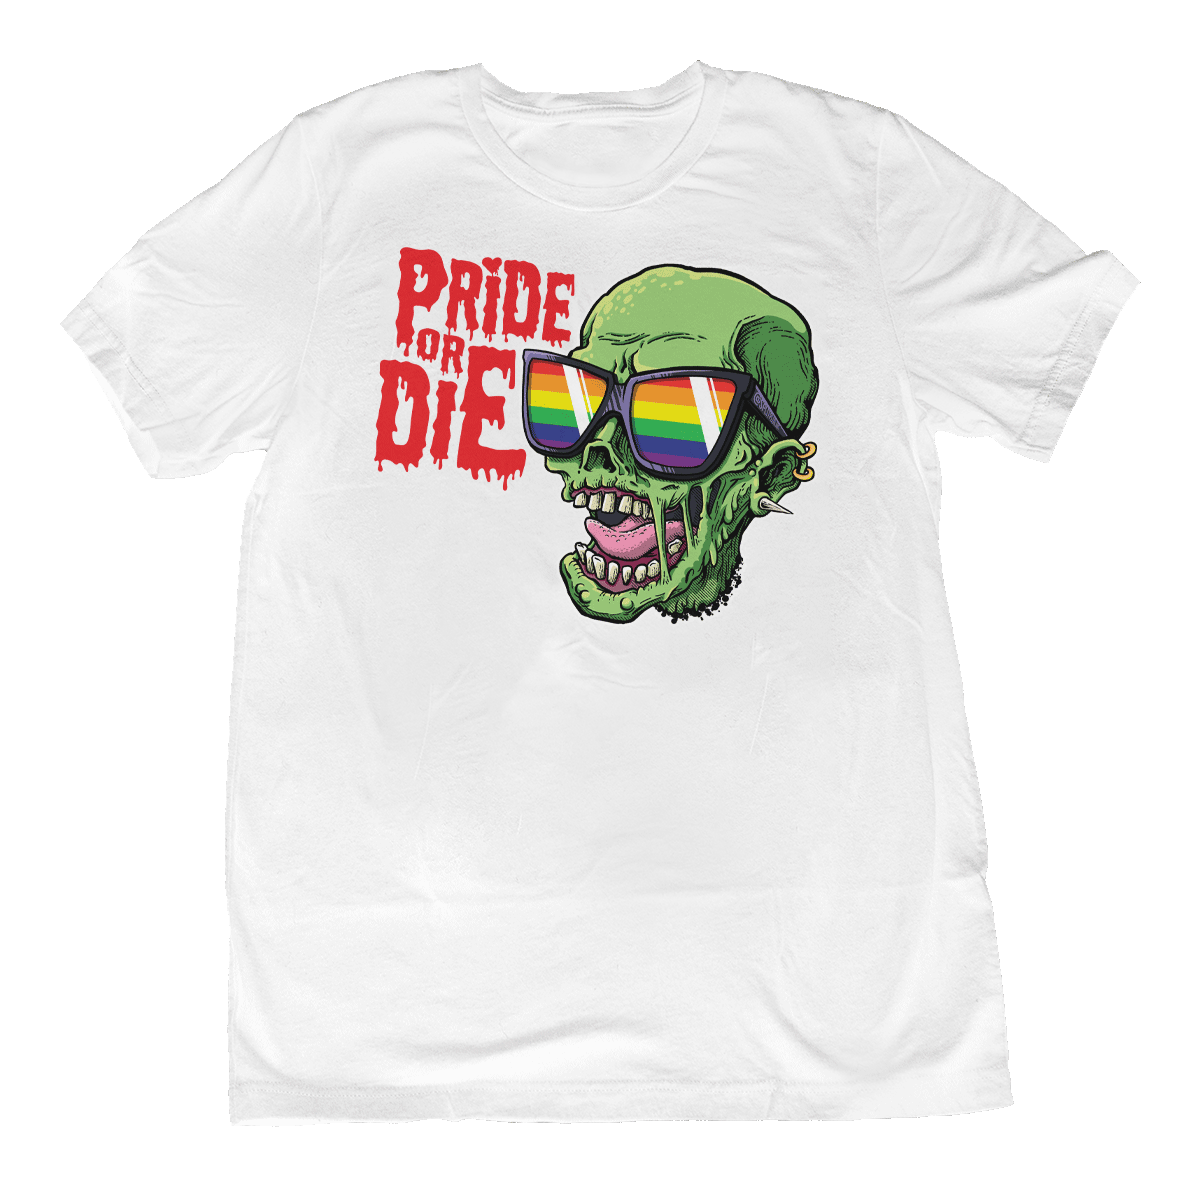 LGBT Pride or Die T-shirt